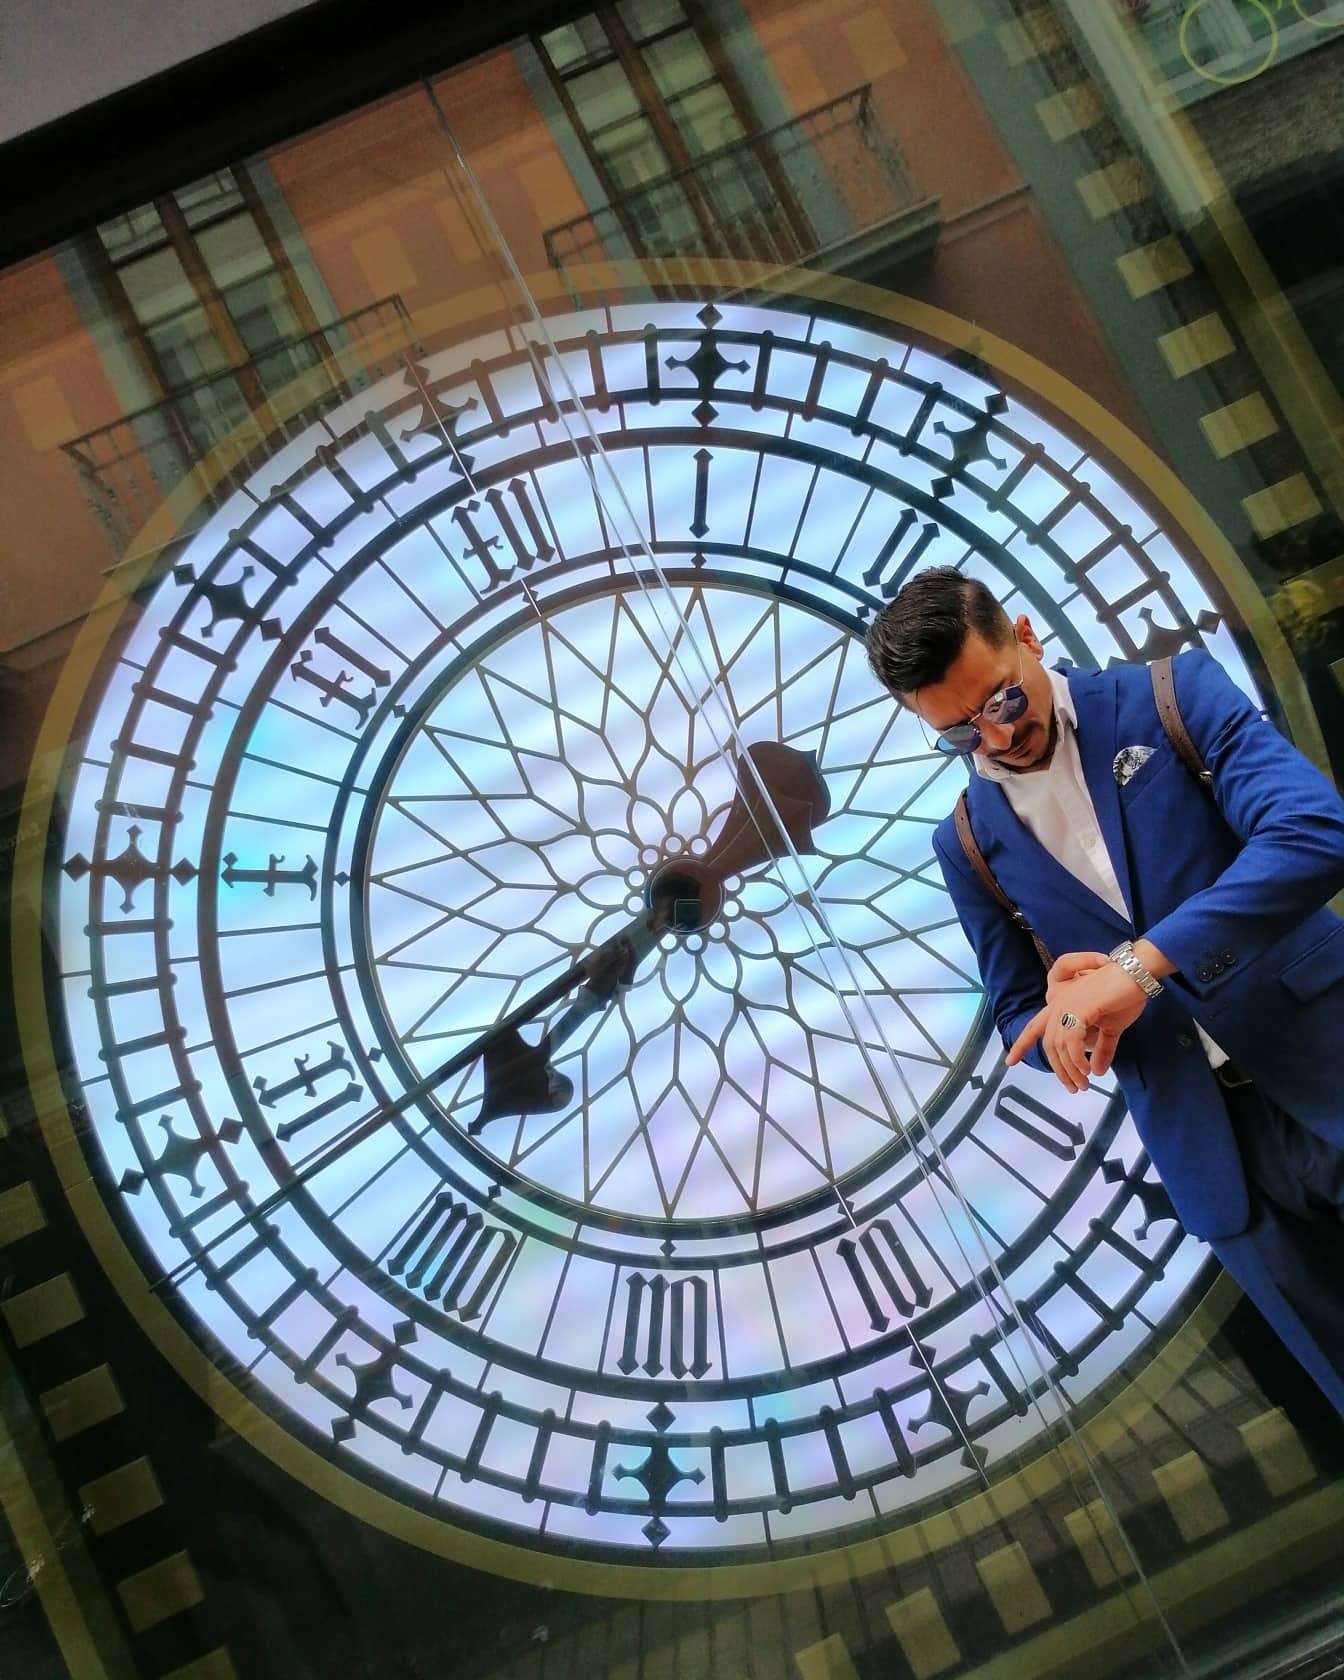 Doanh nhân trong một bộ đồ nhìn vào đồng hồ đeo tay với sự phản chiếu của đồng hồ lớn trên cửa sổ trong nền